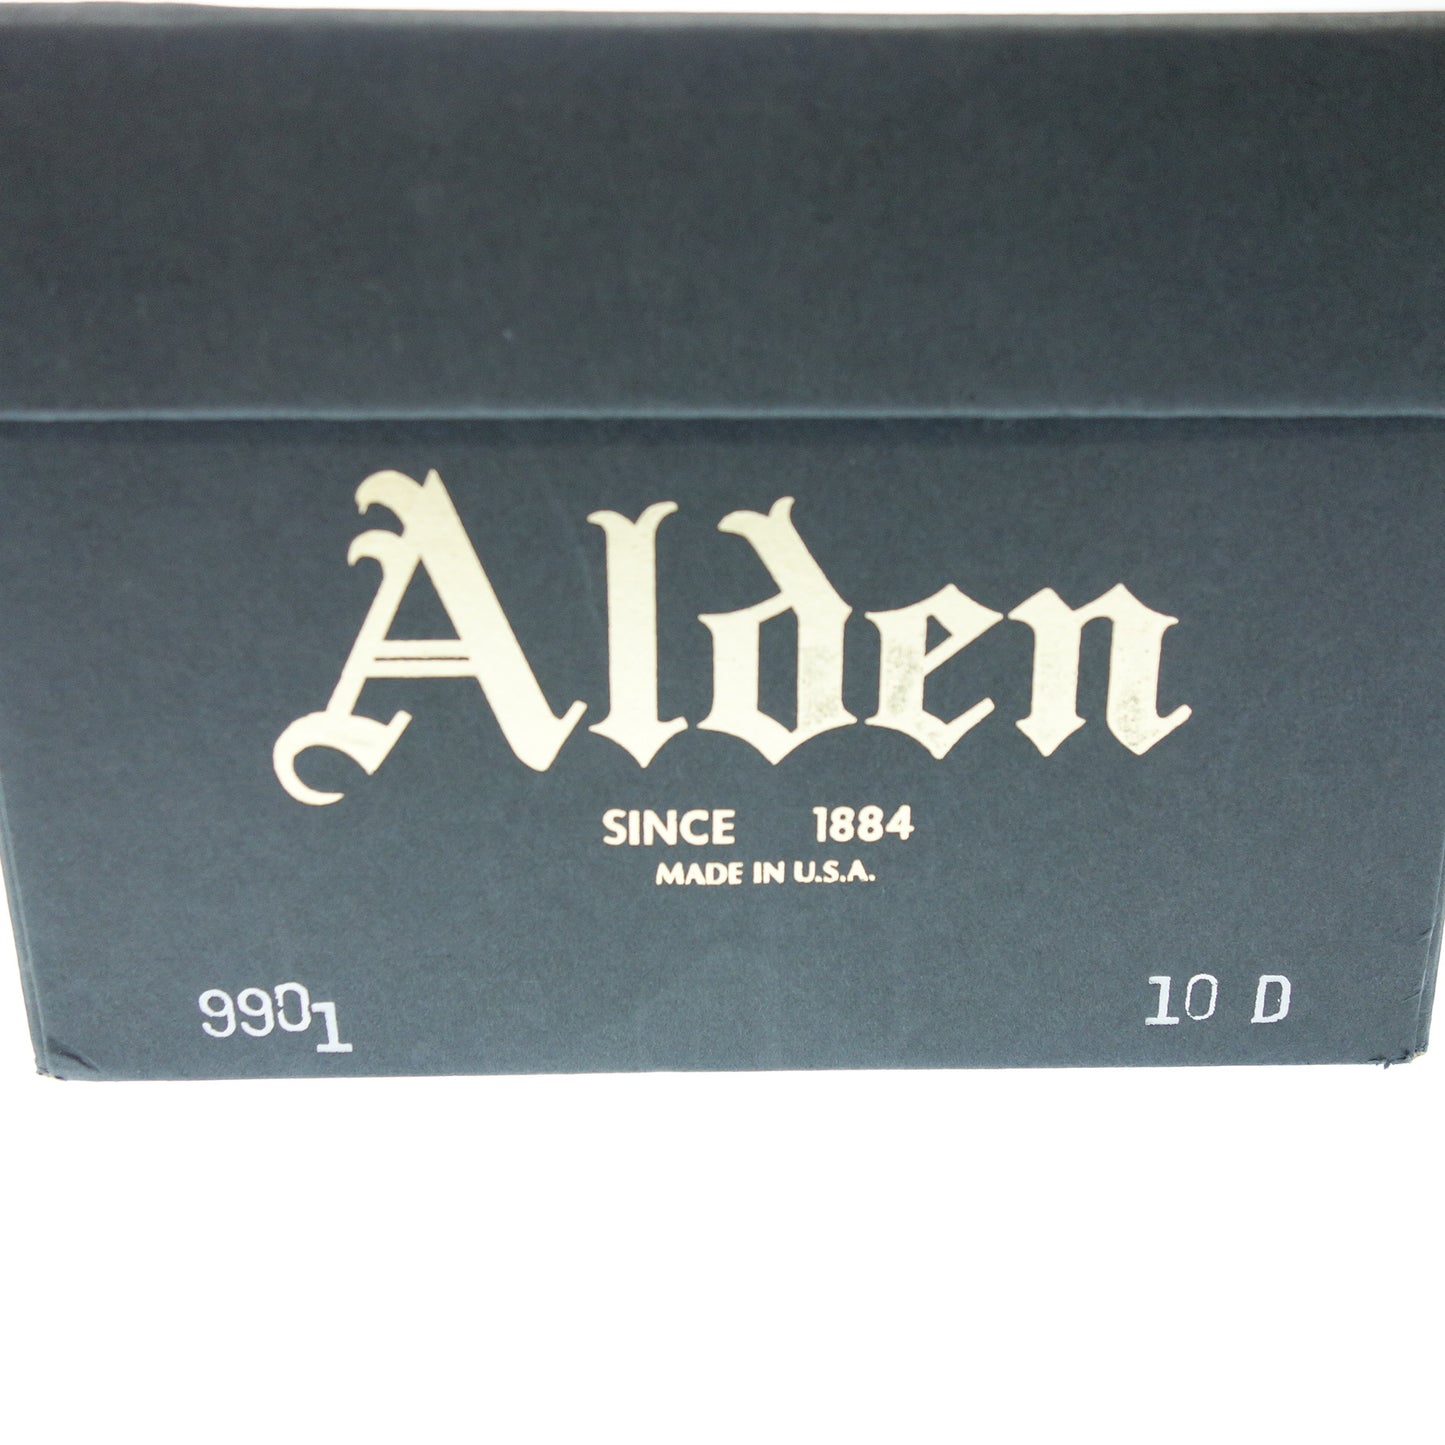 【ALDEN】オールデン 9901 プレーントゥ コードバン ブラック サイズ US10D バリーラスト